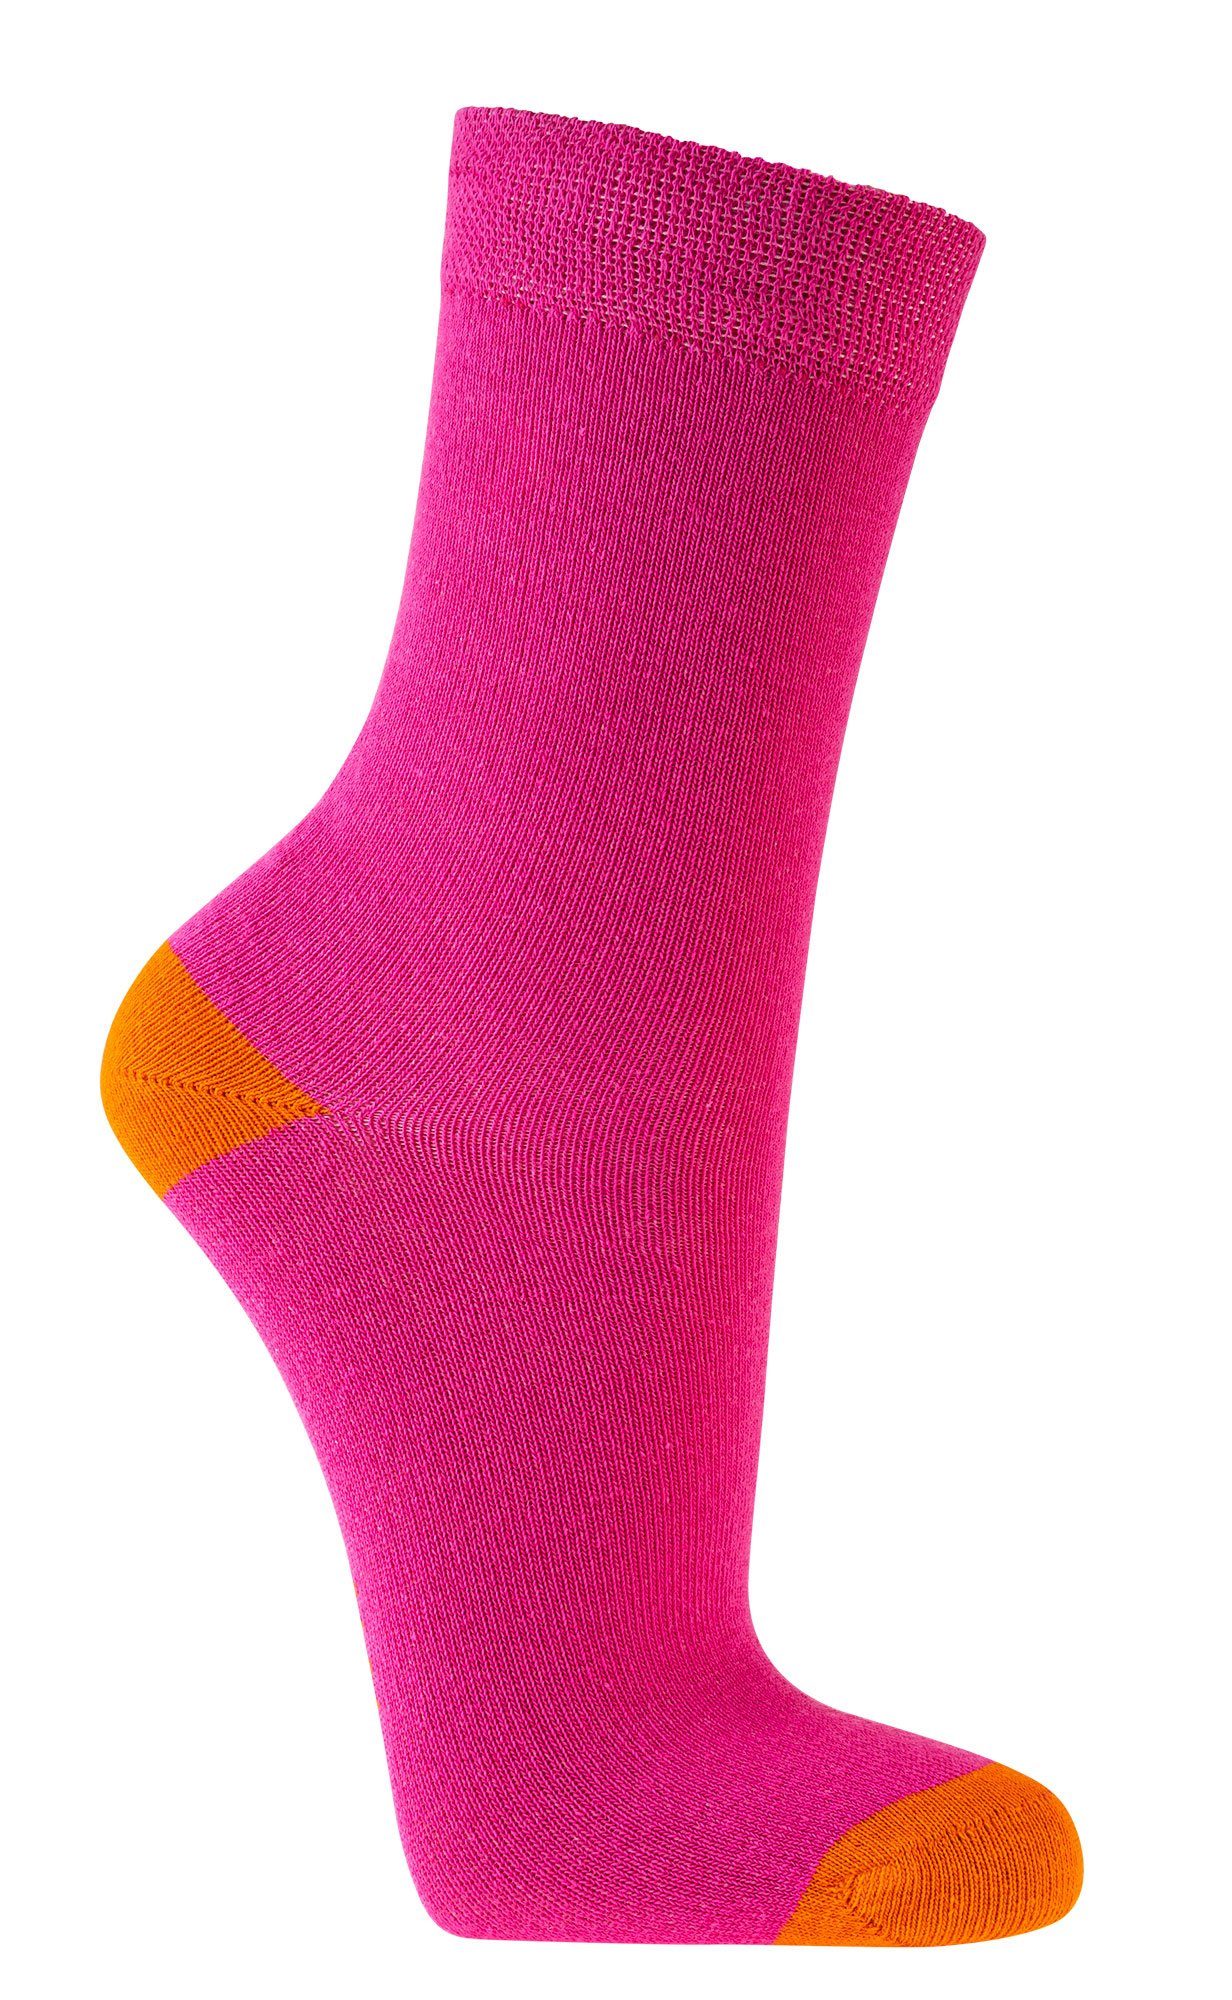 GUTE FARBEN Socken LAUNE Socken Jungen, FussFreunde Kinder & 6 Pink Mädchen Paar für